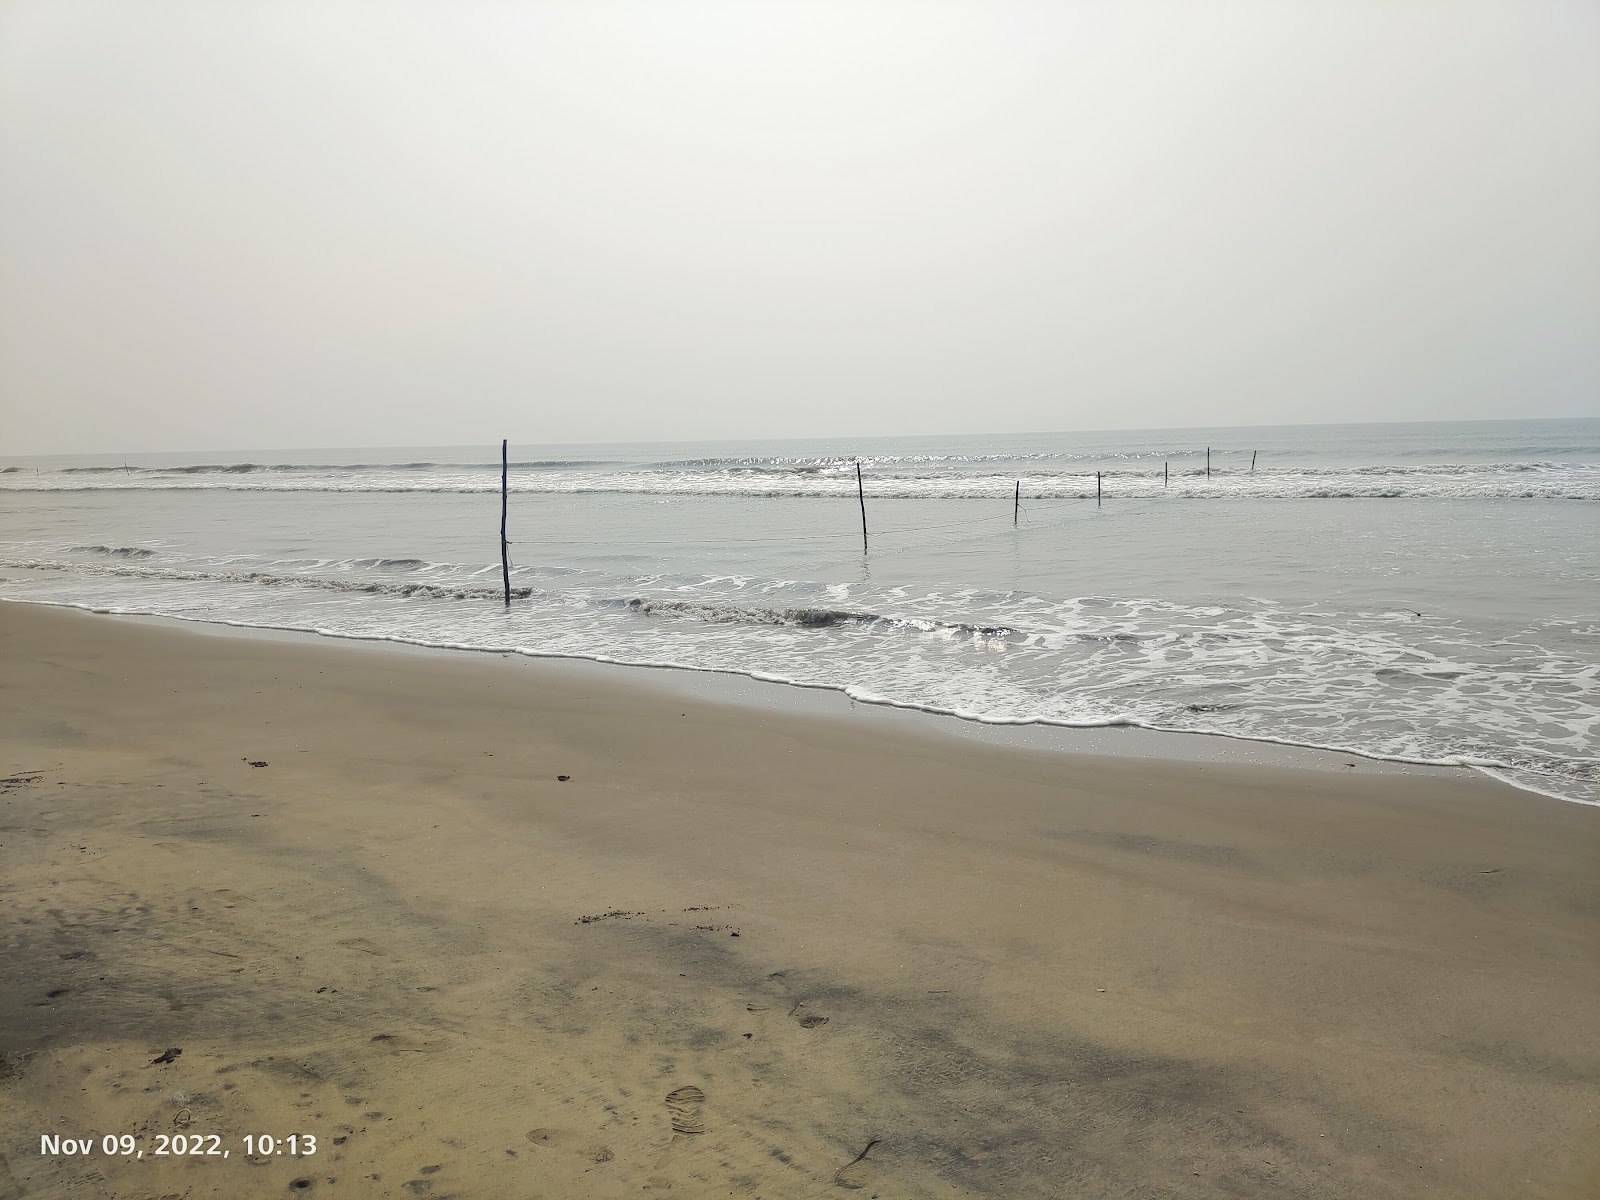 Gollapalem Beach, Krishna District'in fotoğrafı parlak kum yüzey ile